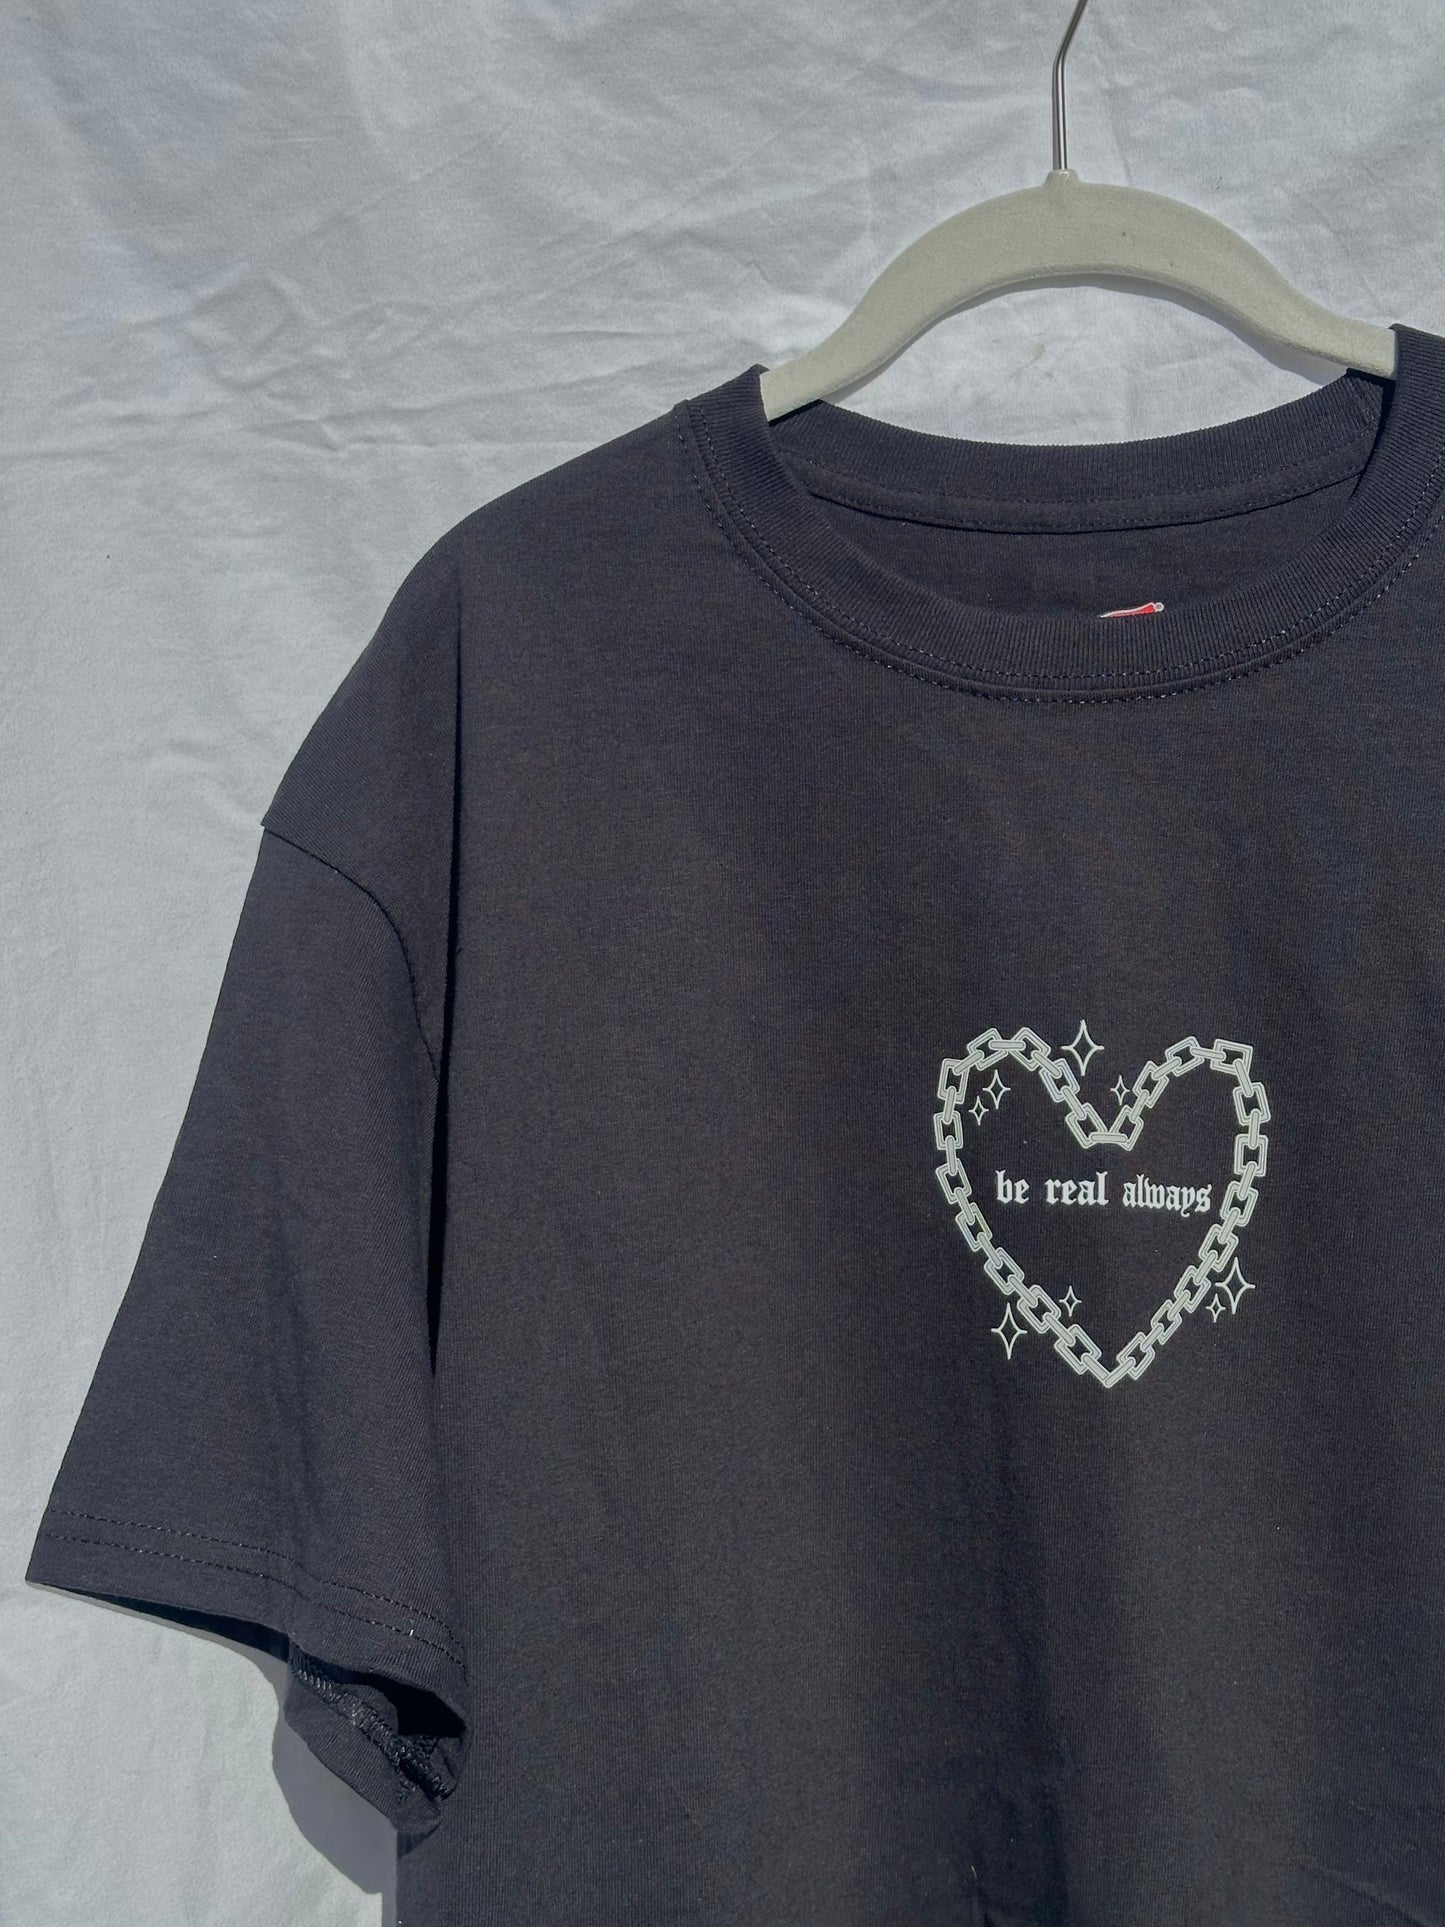 'Heart of Steel' Tshirt